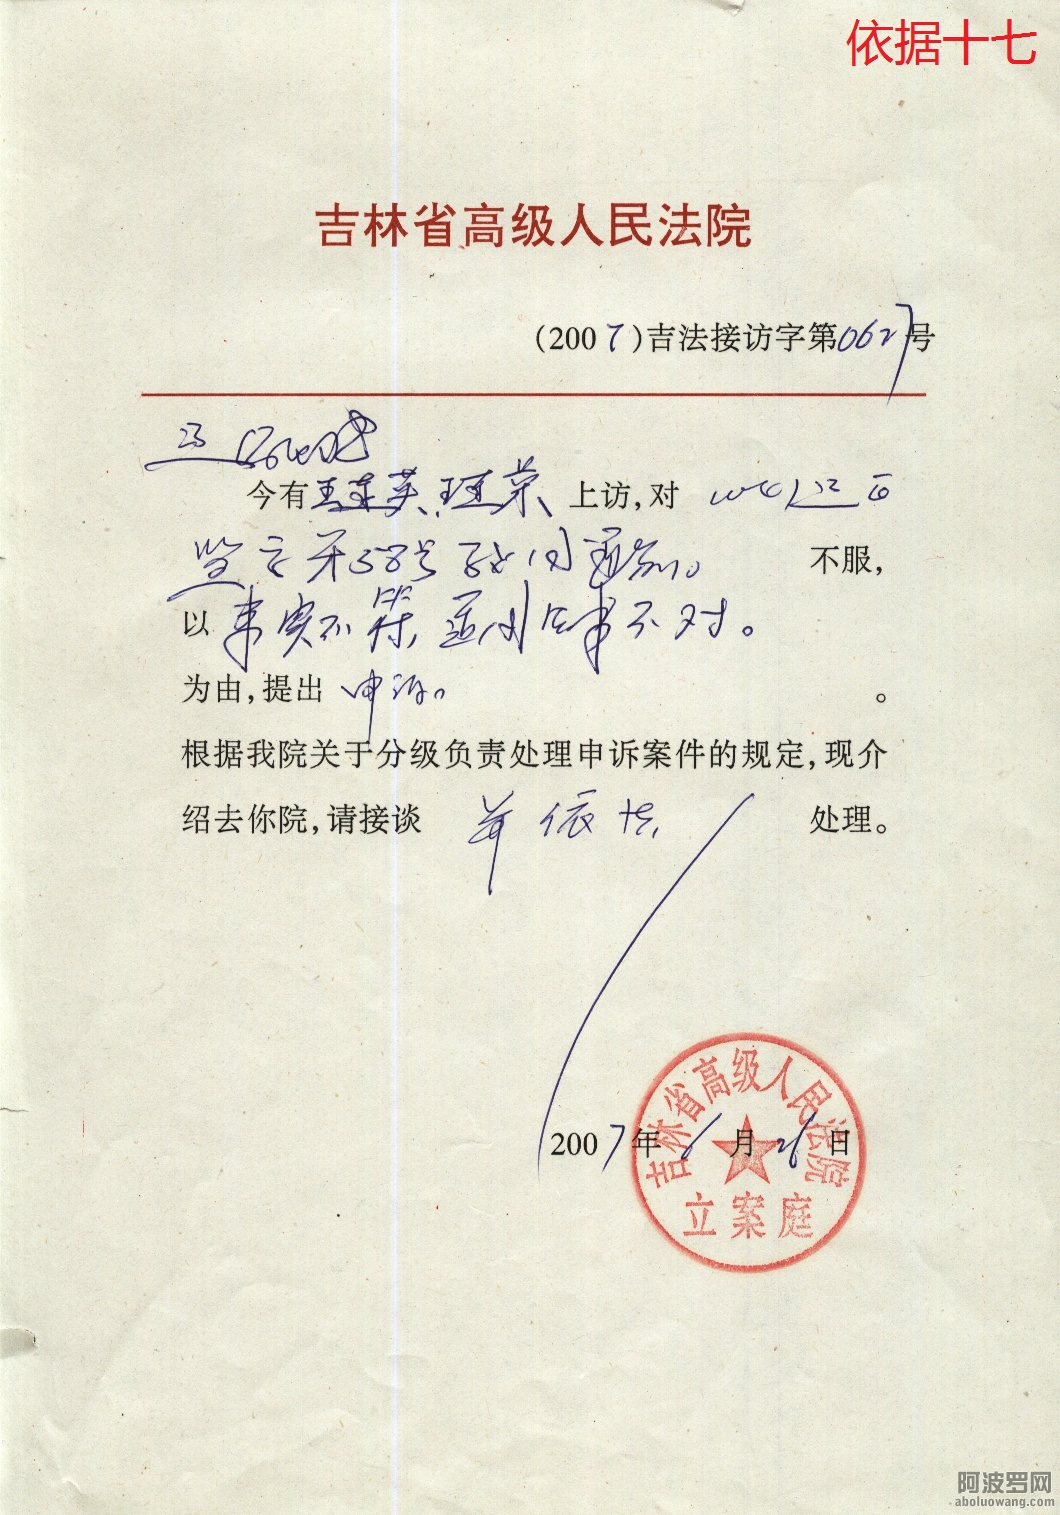 33-依据十七省高法2007年连英、连荣信函.png